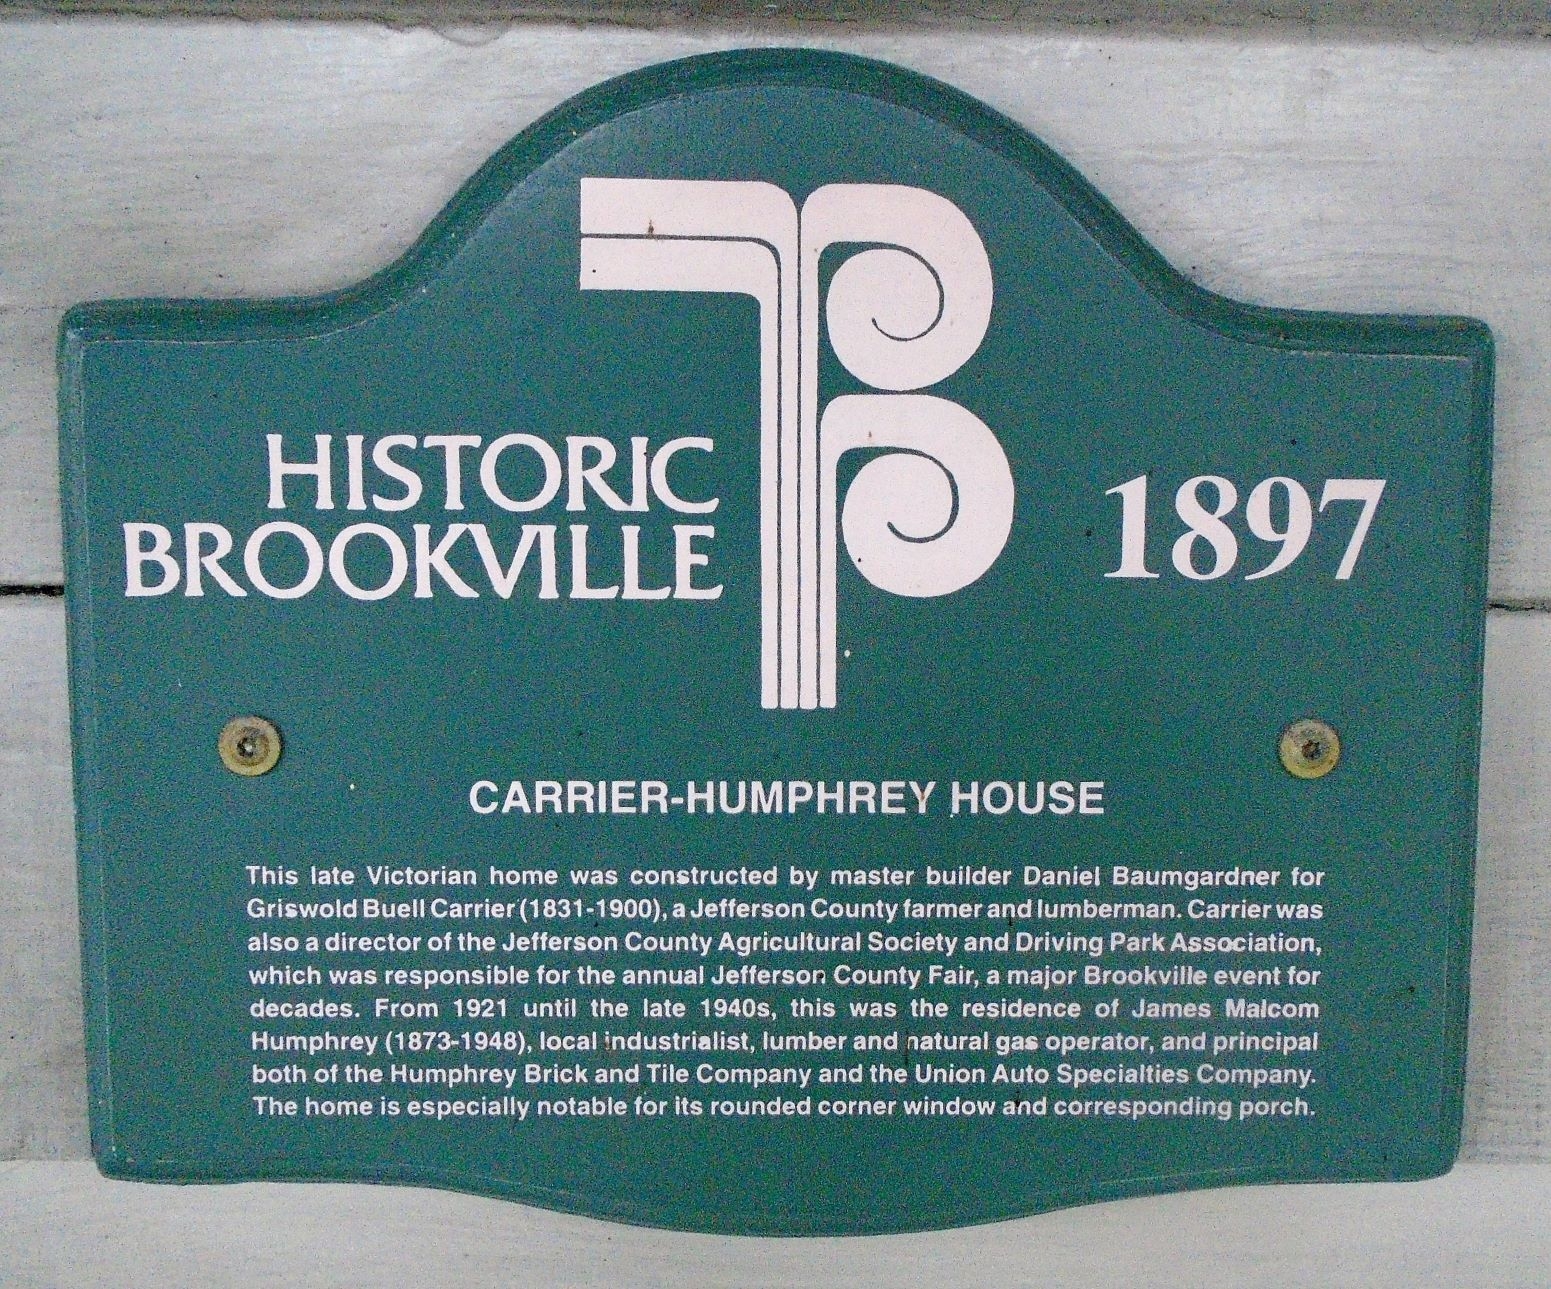 Carrier-Humphrey House Marker